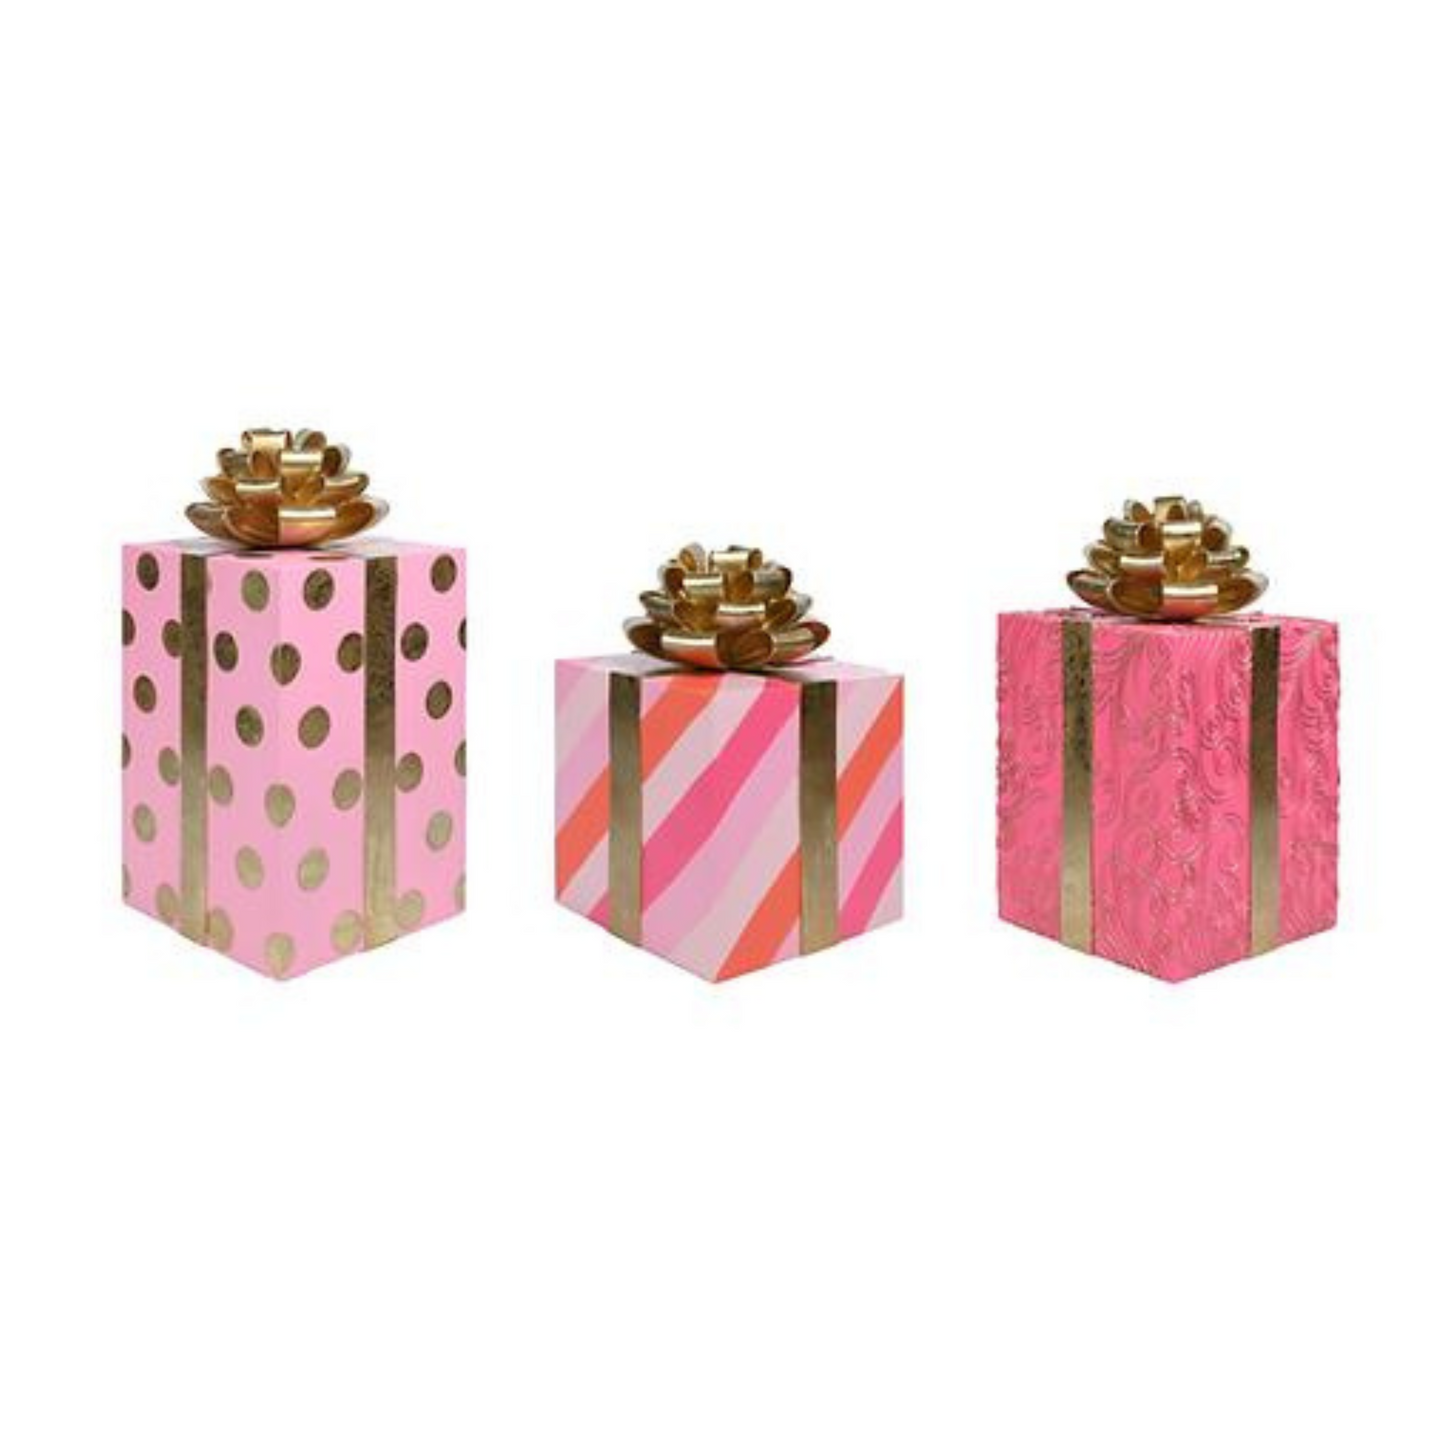 Set of 3 Pink / Gold / Orange Gift Boxes Display